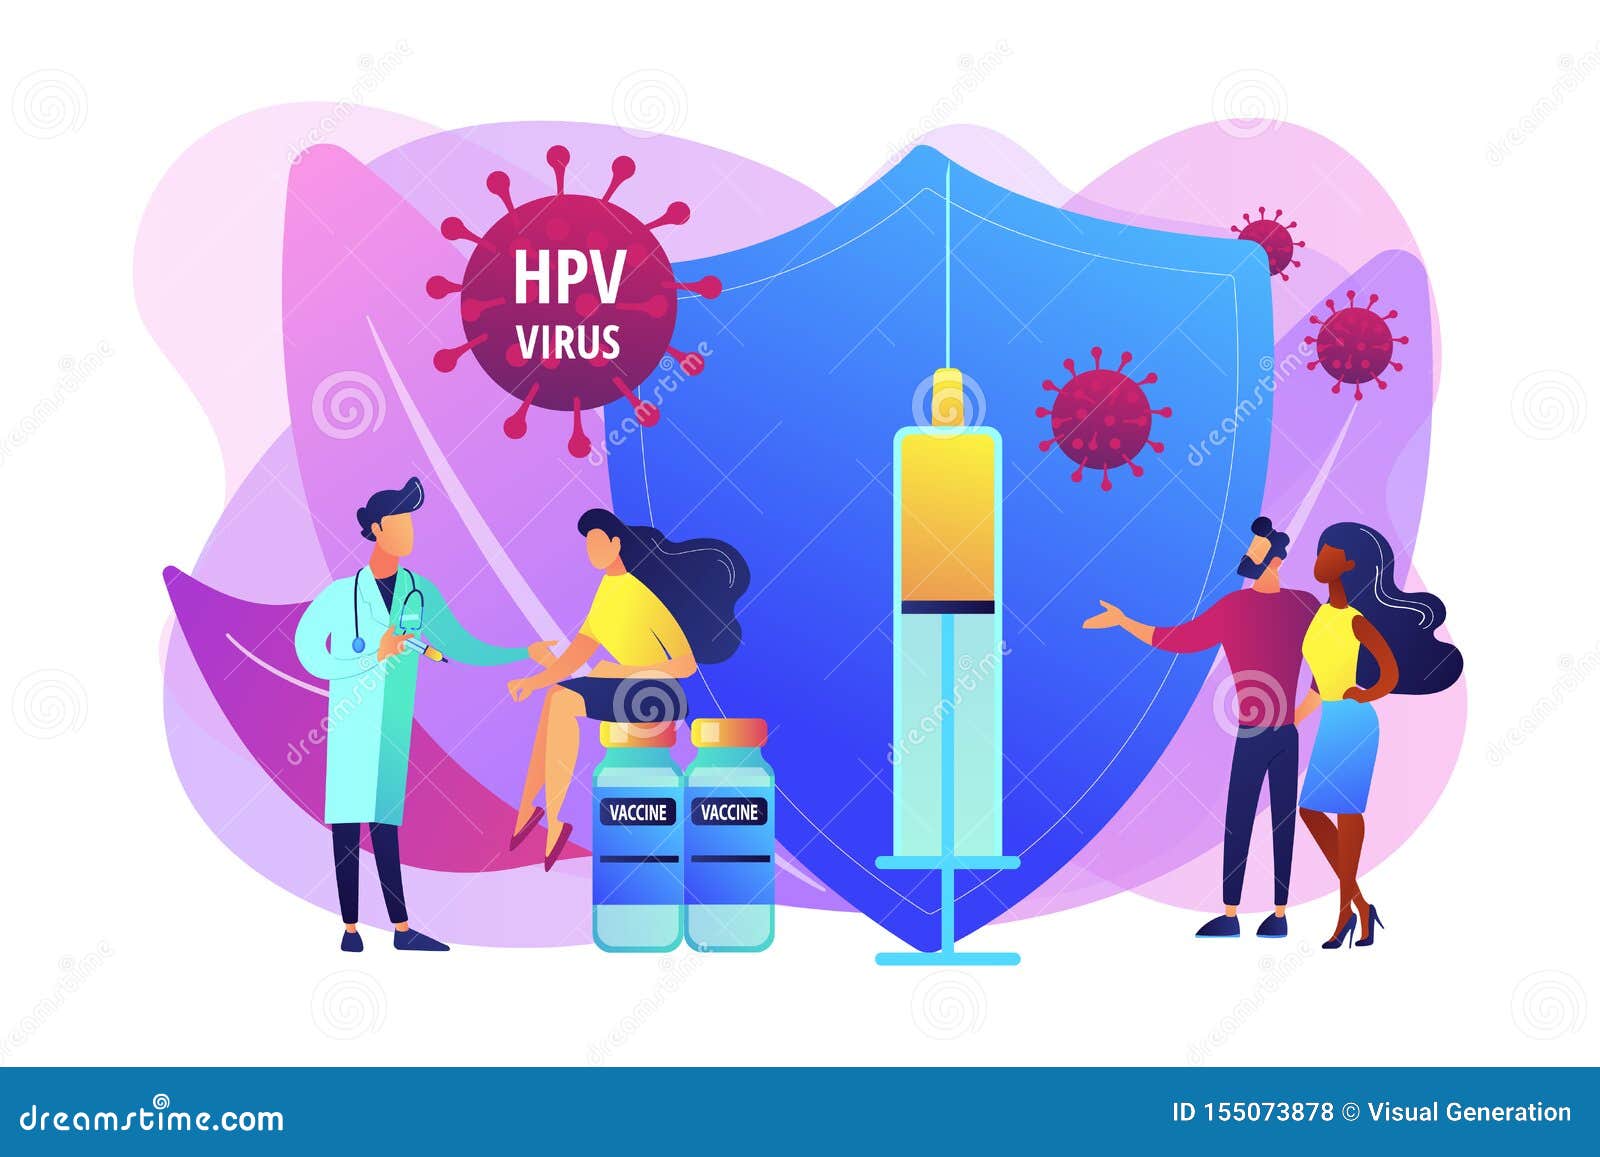 Human papillomavirus vaccine virus